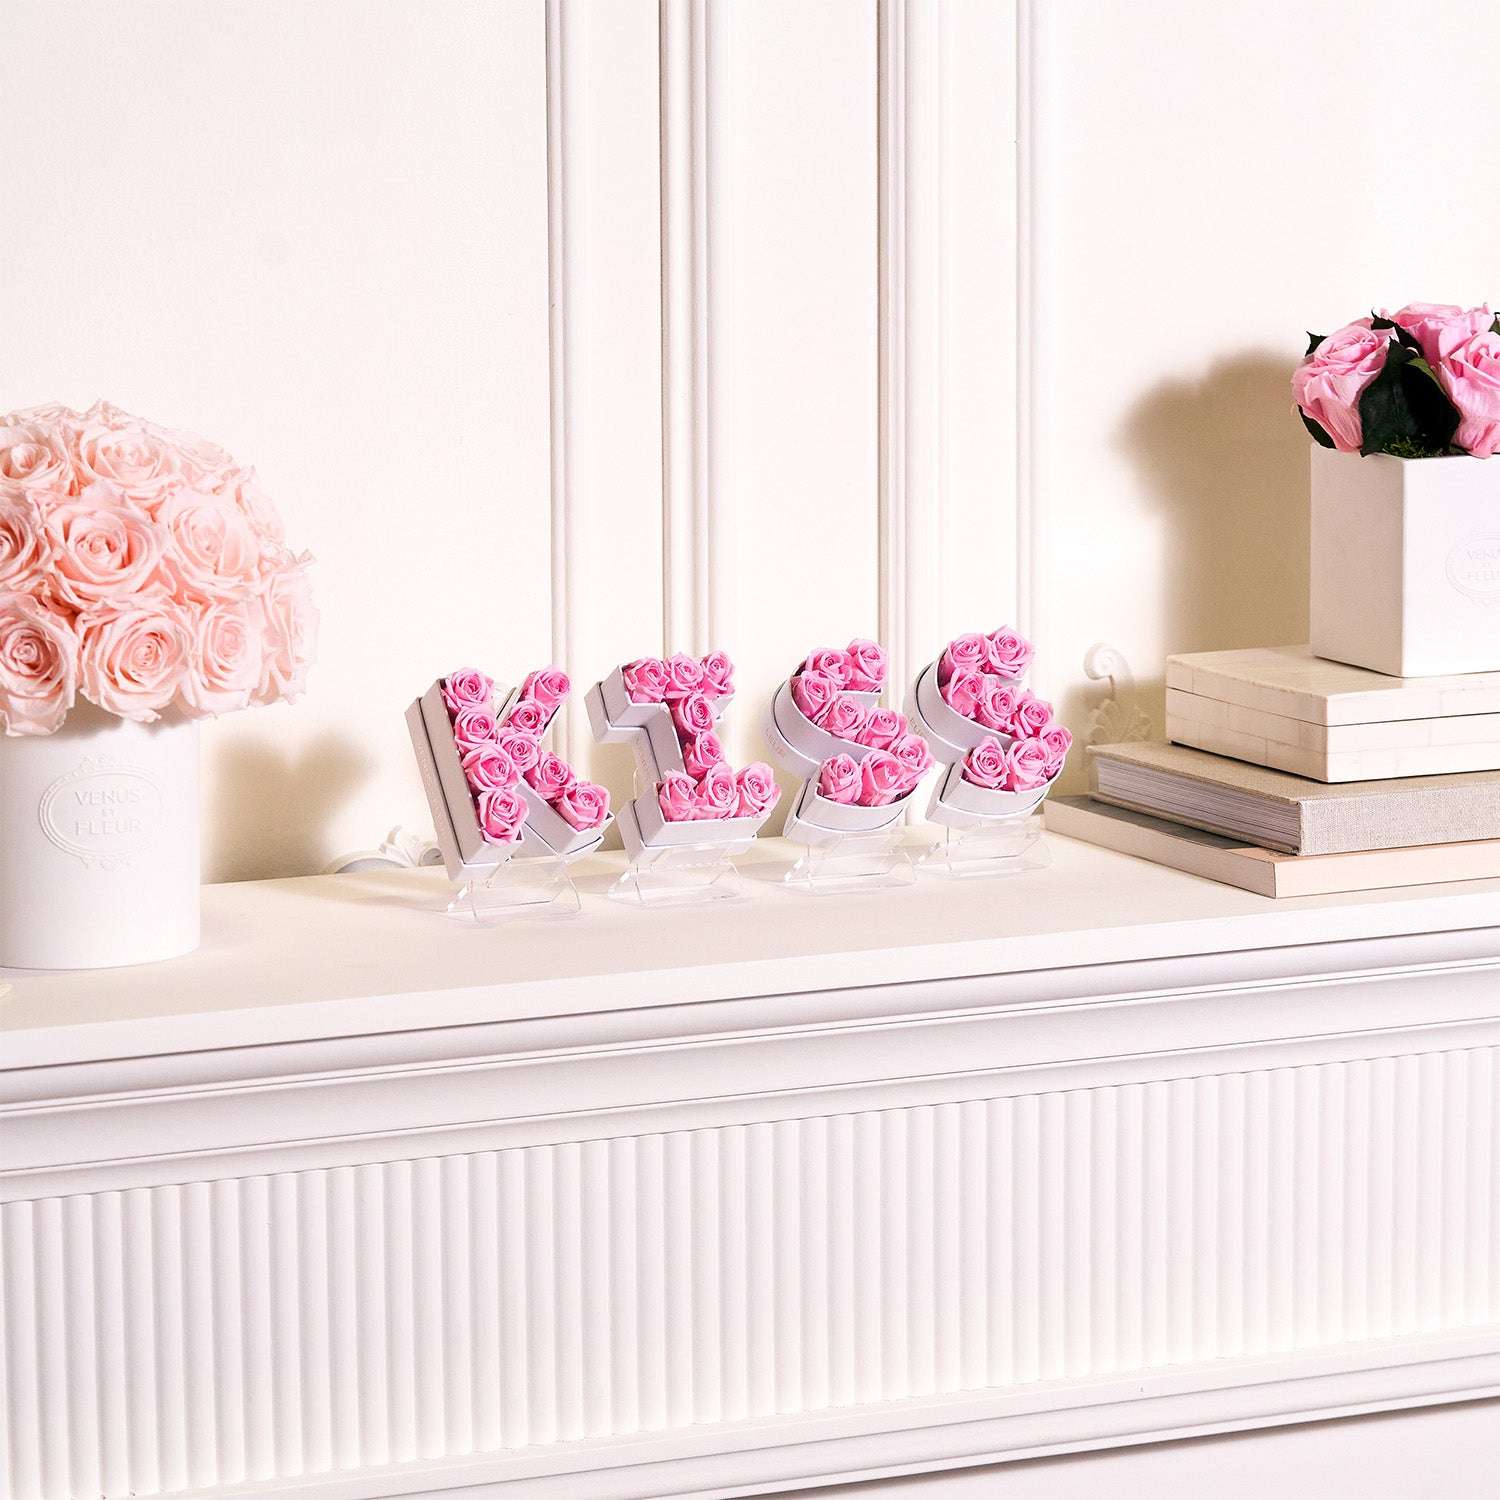 Le Mini Letter Letter K Box With Flowers - Venus et Fleur